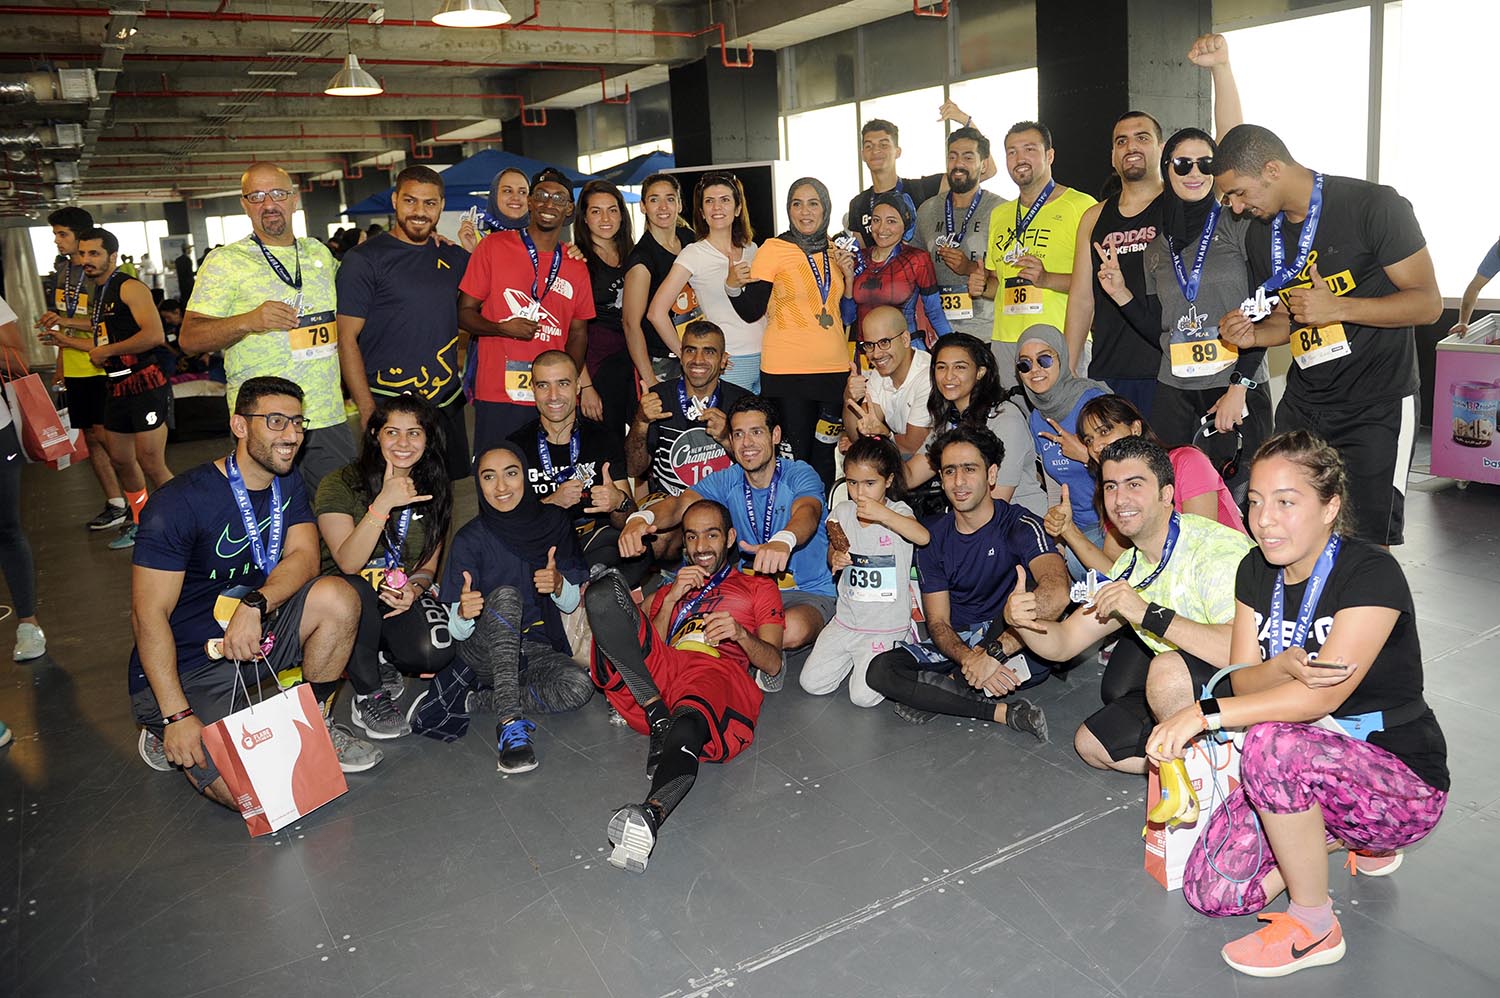 صورة جماعية للمشاركين في سباق الماراثون العامودي (بيك)